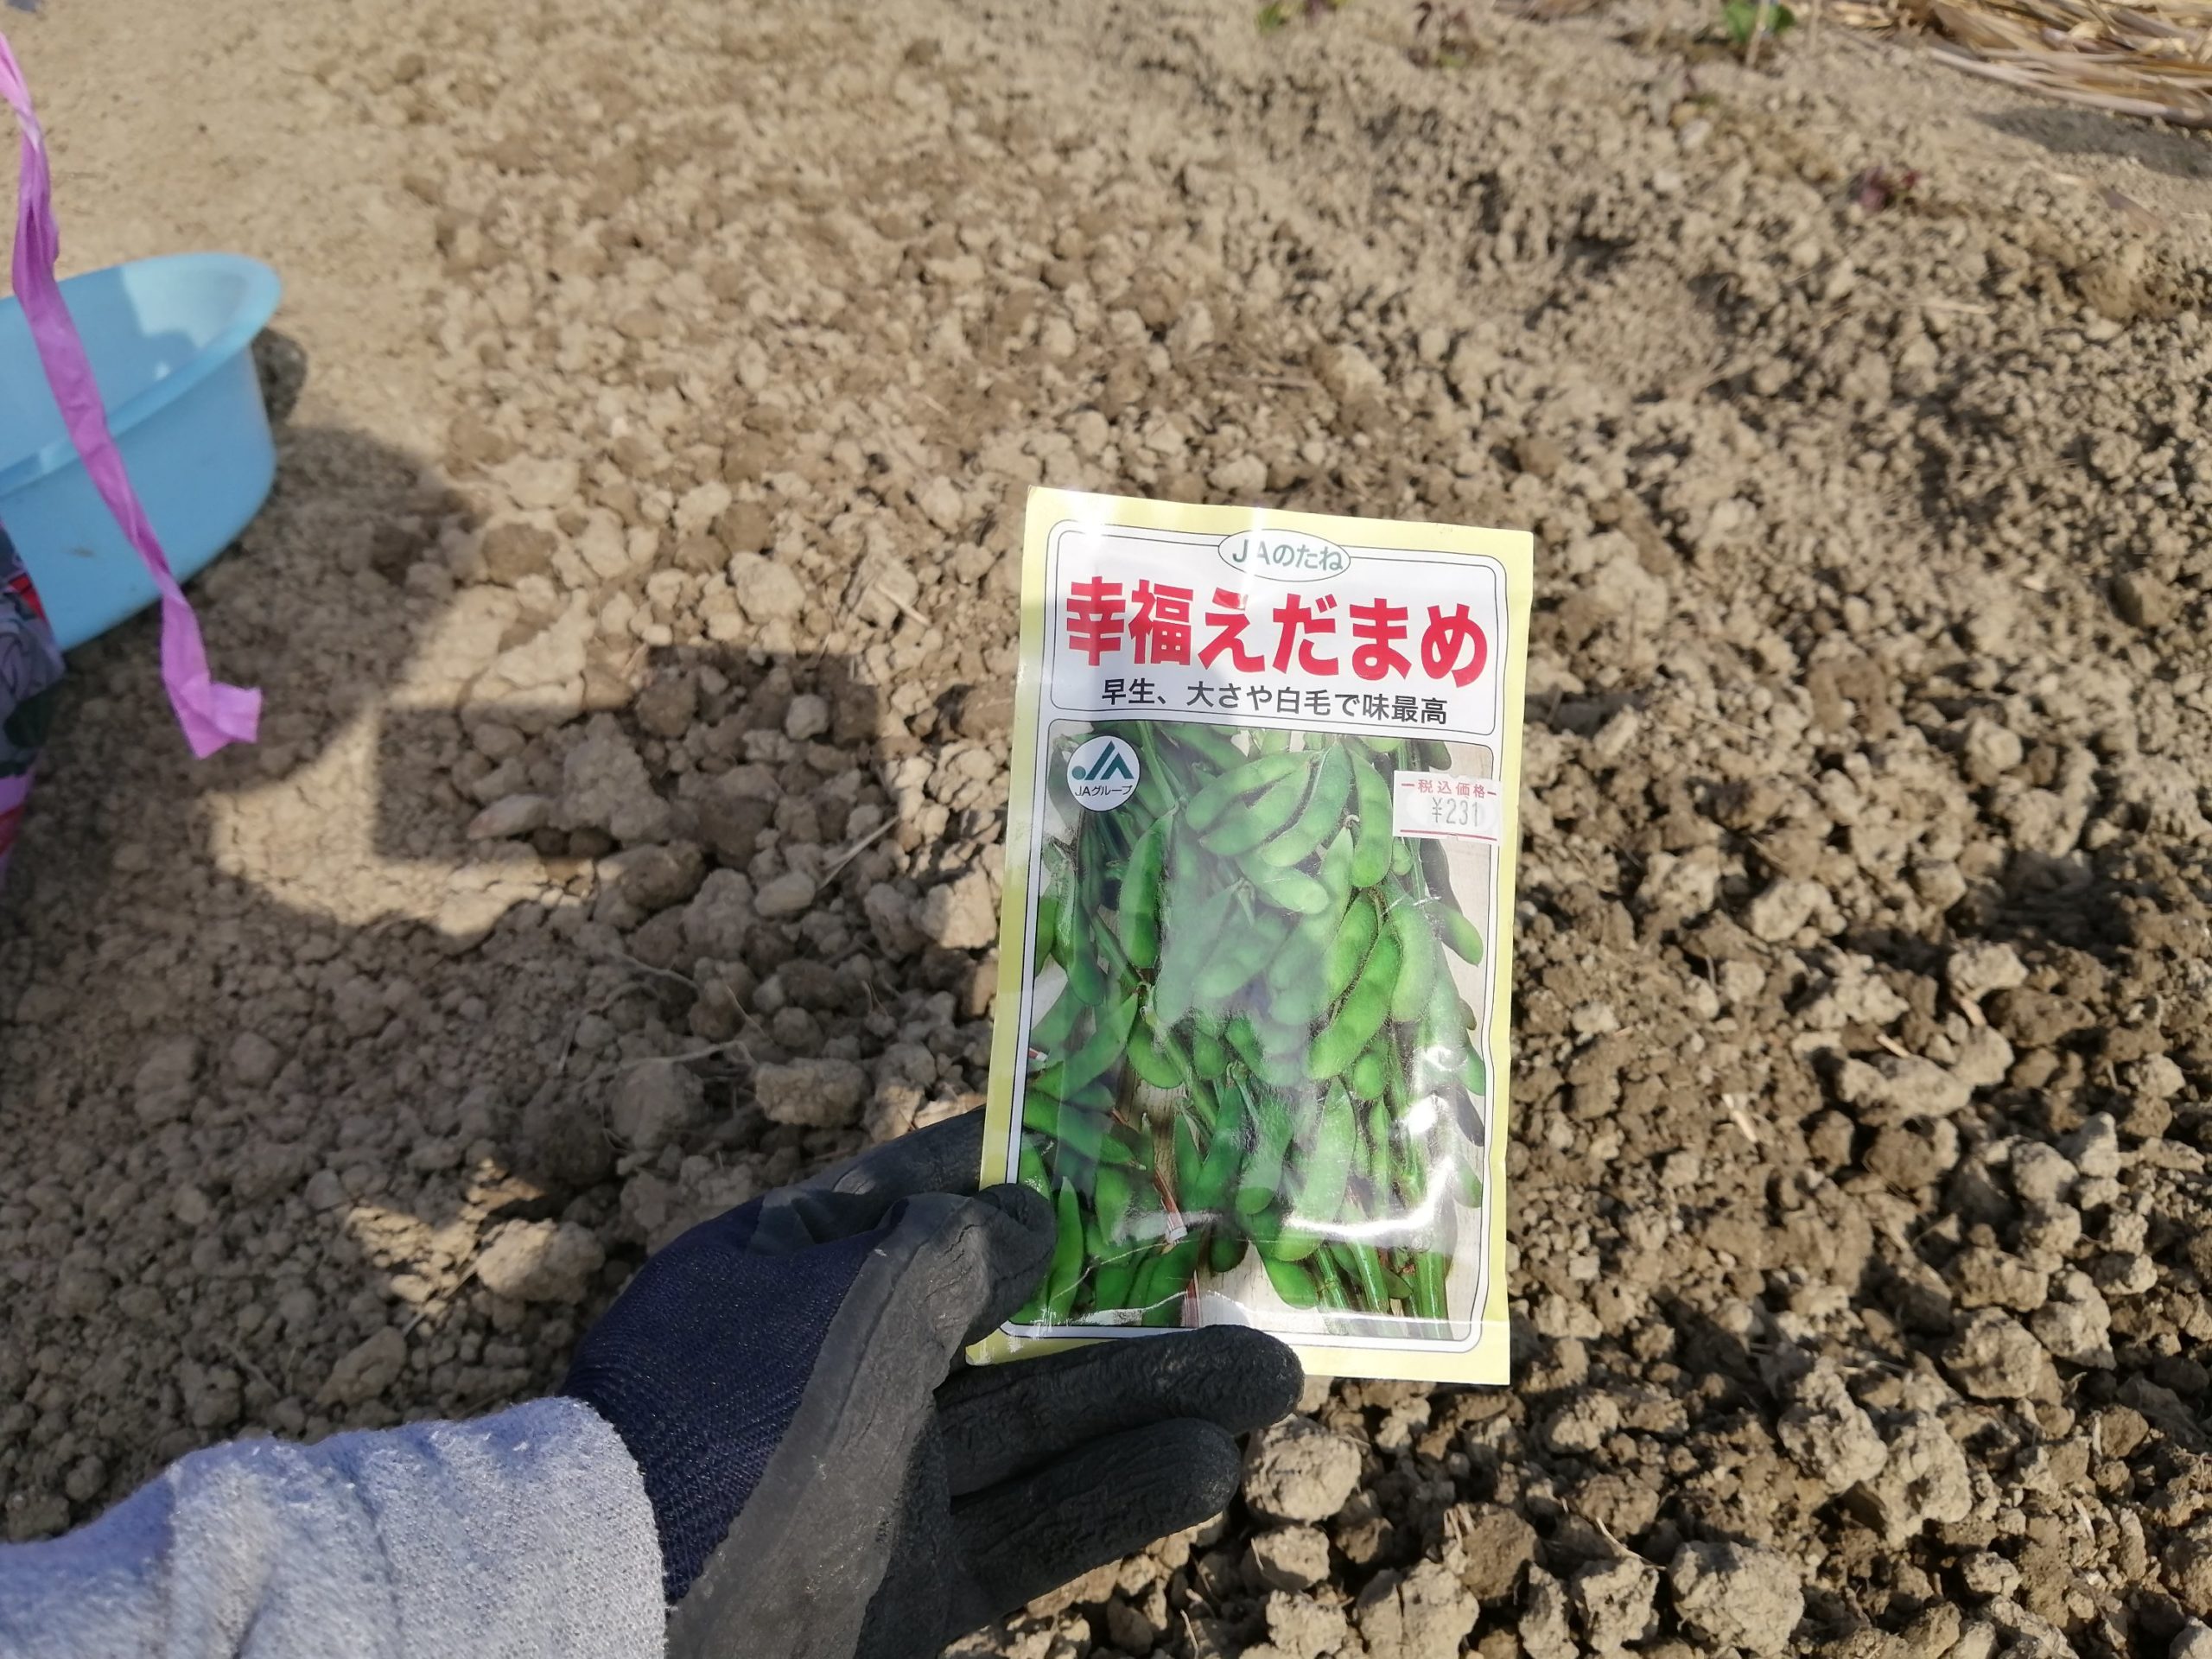 コンパニオンプランツ 枝豆とトウモロコシ 枝豆の種植える 沖縄移住者マキコの子育て農業ブログ